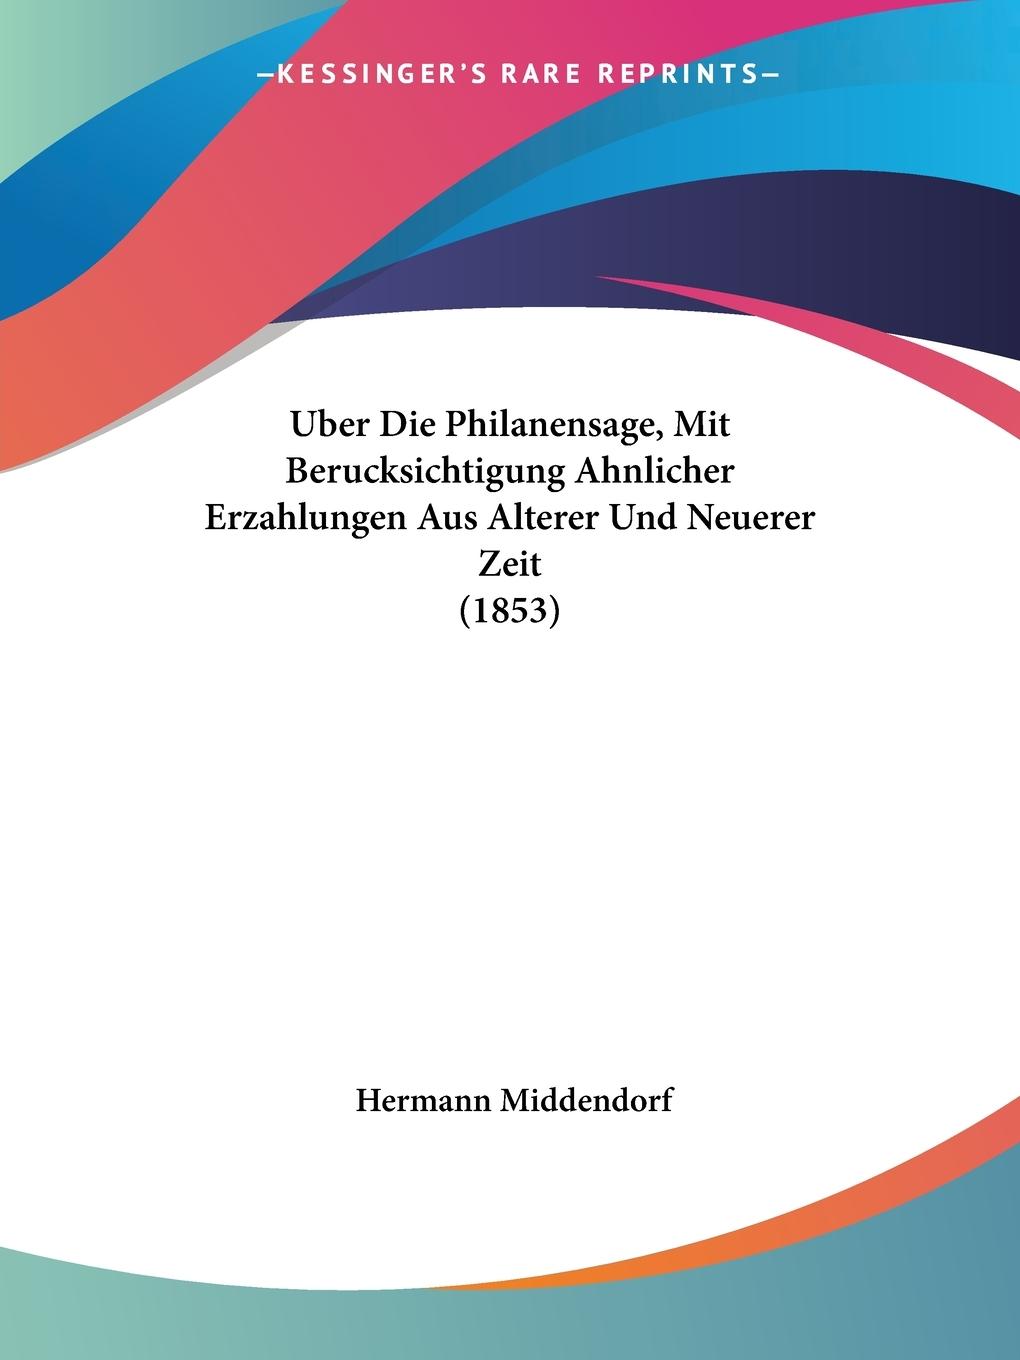 Uber Die Philanensage, Mit Berucksichtigung Ahnlicher Erzahlungen Aus Alterer Und Neuerer Zeit (1853) - Middendorf, Hermann